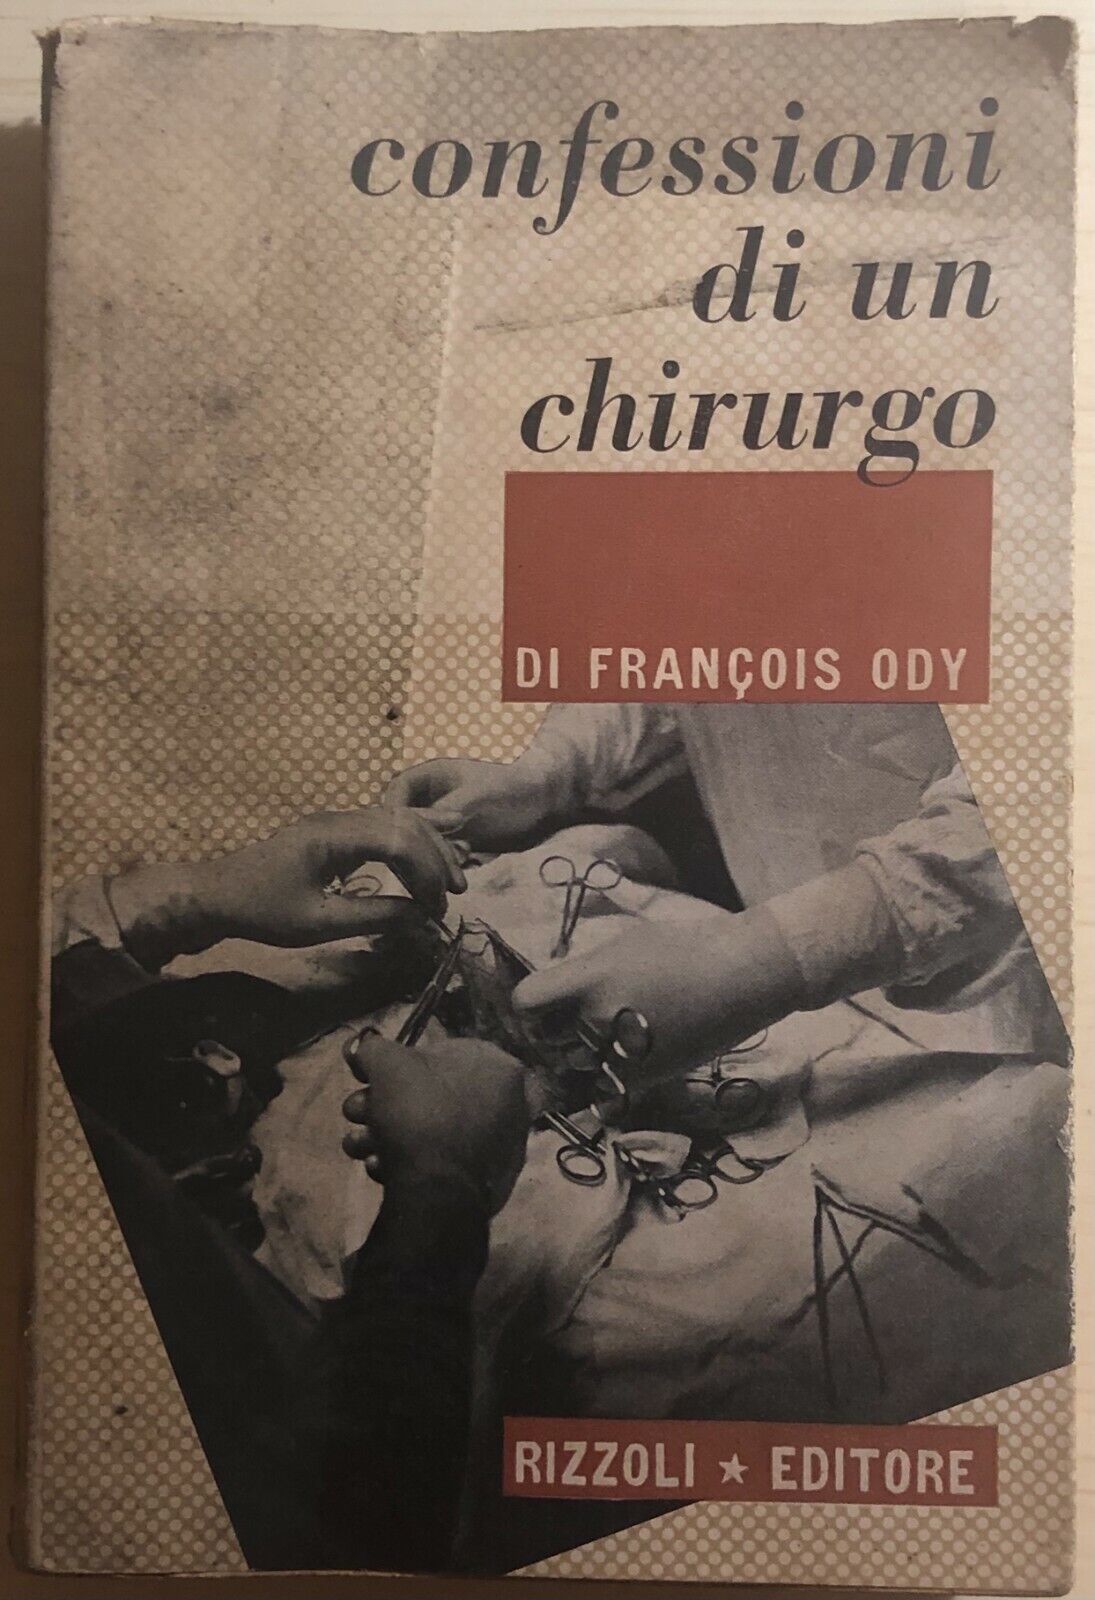 Confessioni di un chirurgo di Francois Ody,  1947,  Rizzoli Editore